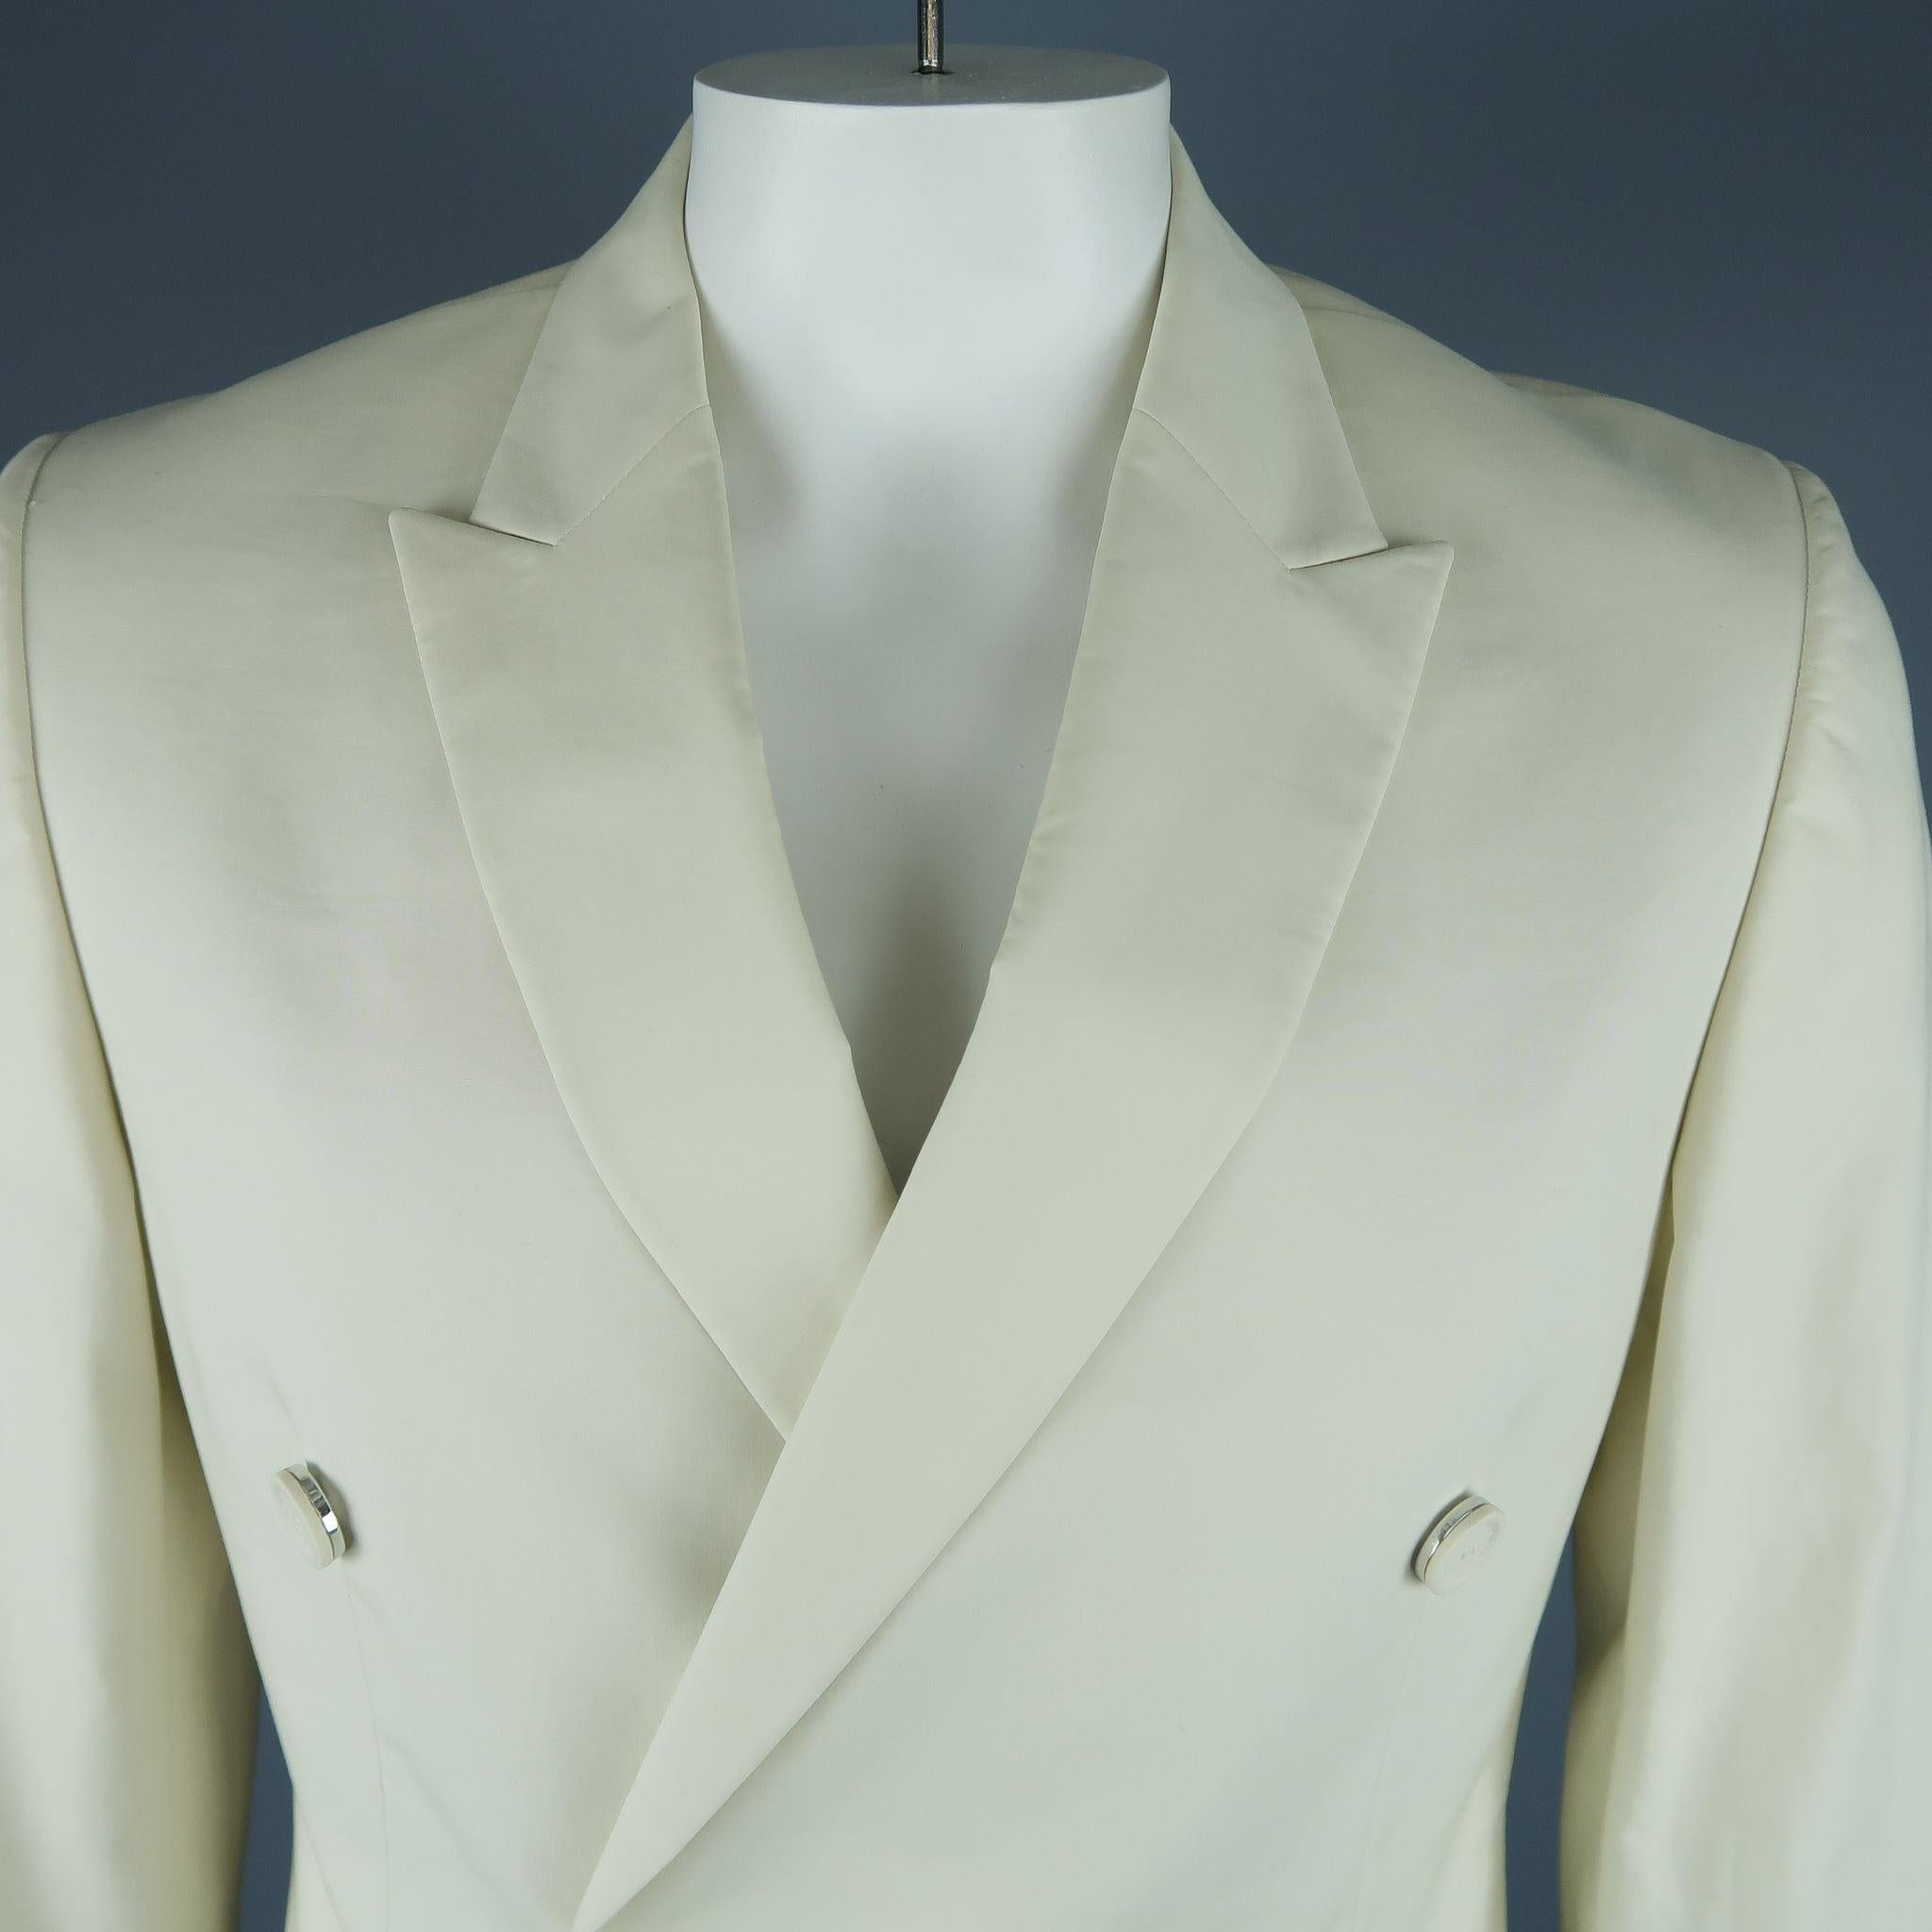 Le manteau de sport CALVIN KLEIN COLLECTION se présente dans un blanc osseux avec une doublure complète, un revers en pointe, des poches à rabat et une fermeture à double boutonnage. Fabriqué en Italie. Nouveau avec étiquettes.
 

Marqué :   52/42